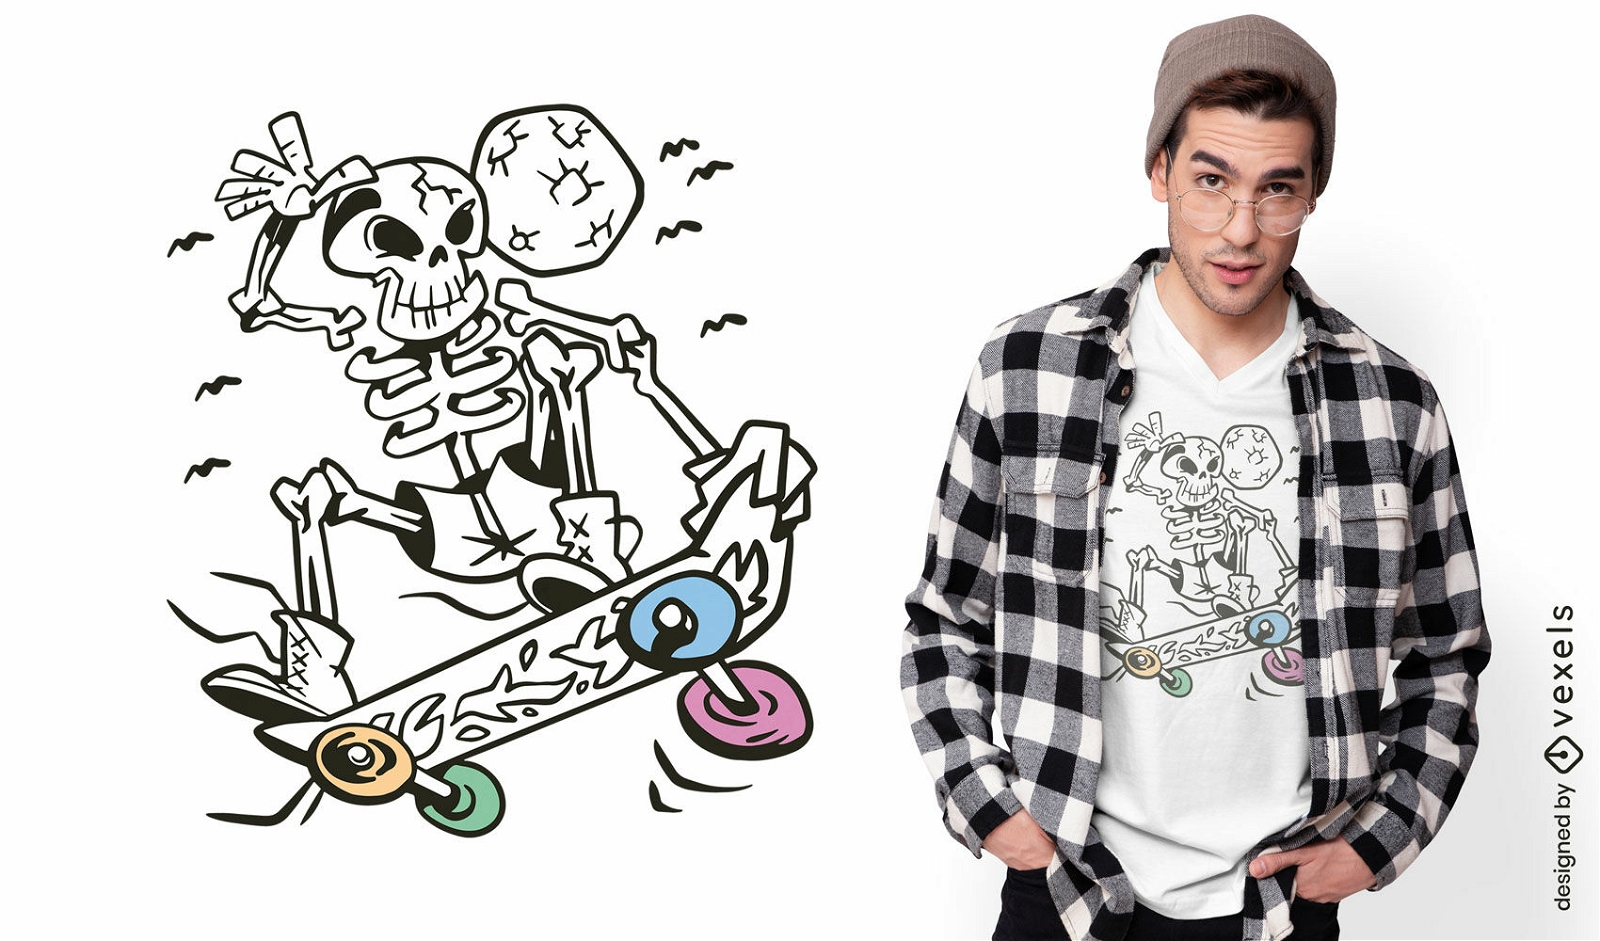 Skeleton skateboarding t-shirt design